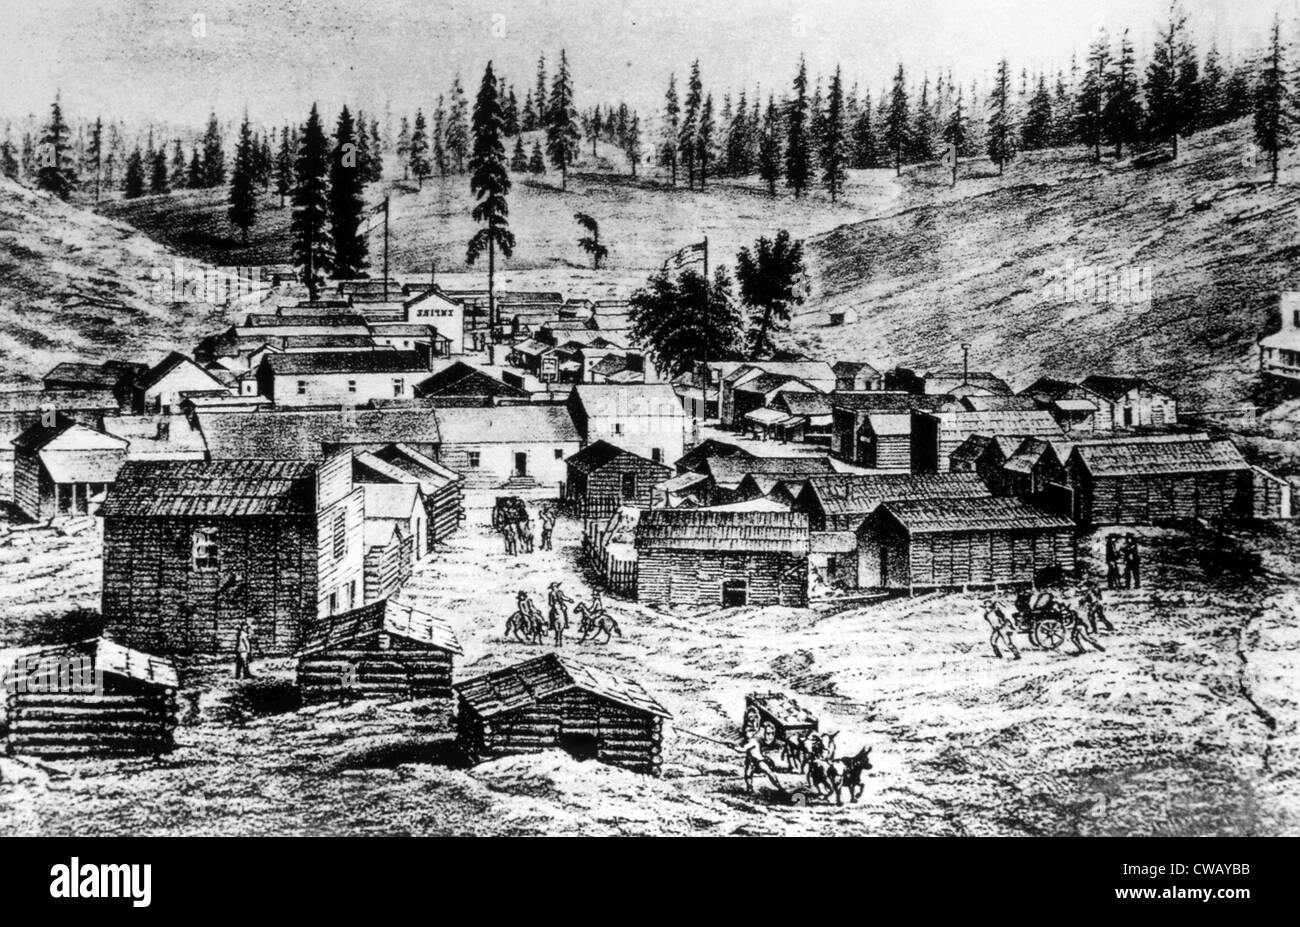 La fiebre del oro, la ciudad de excavaciones en seco, California, posteriormente renombrada Placerville, ca. 1849 Foto de stock